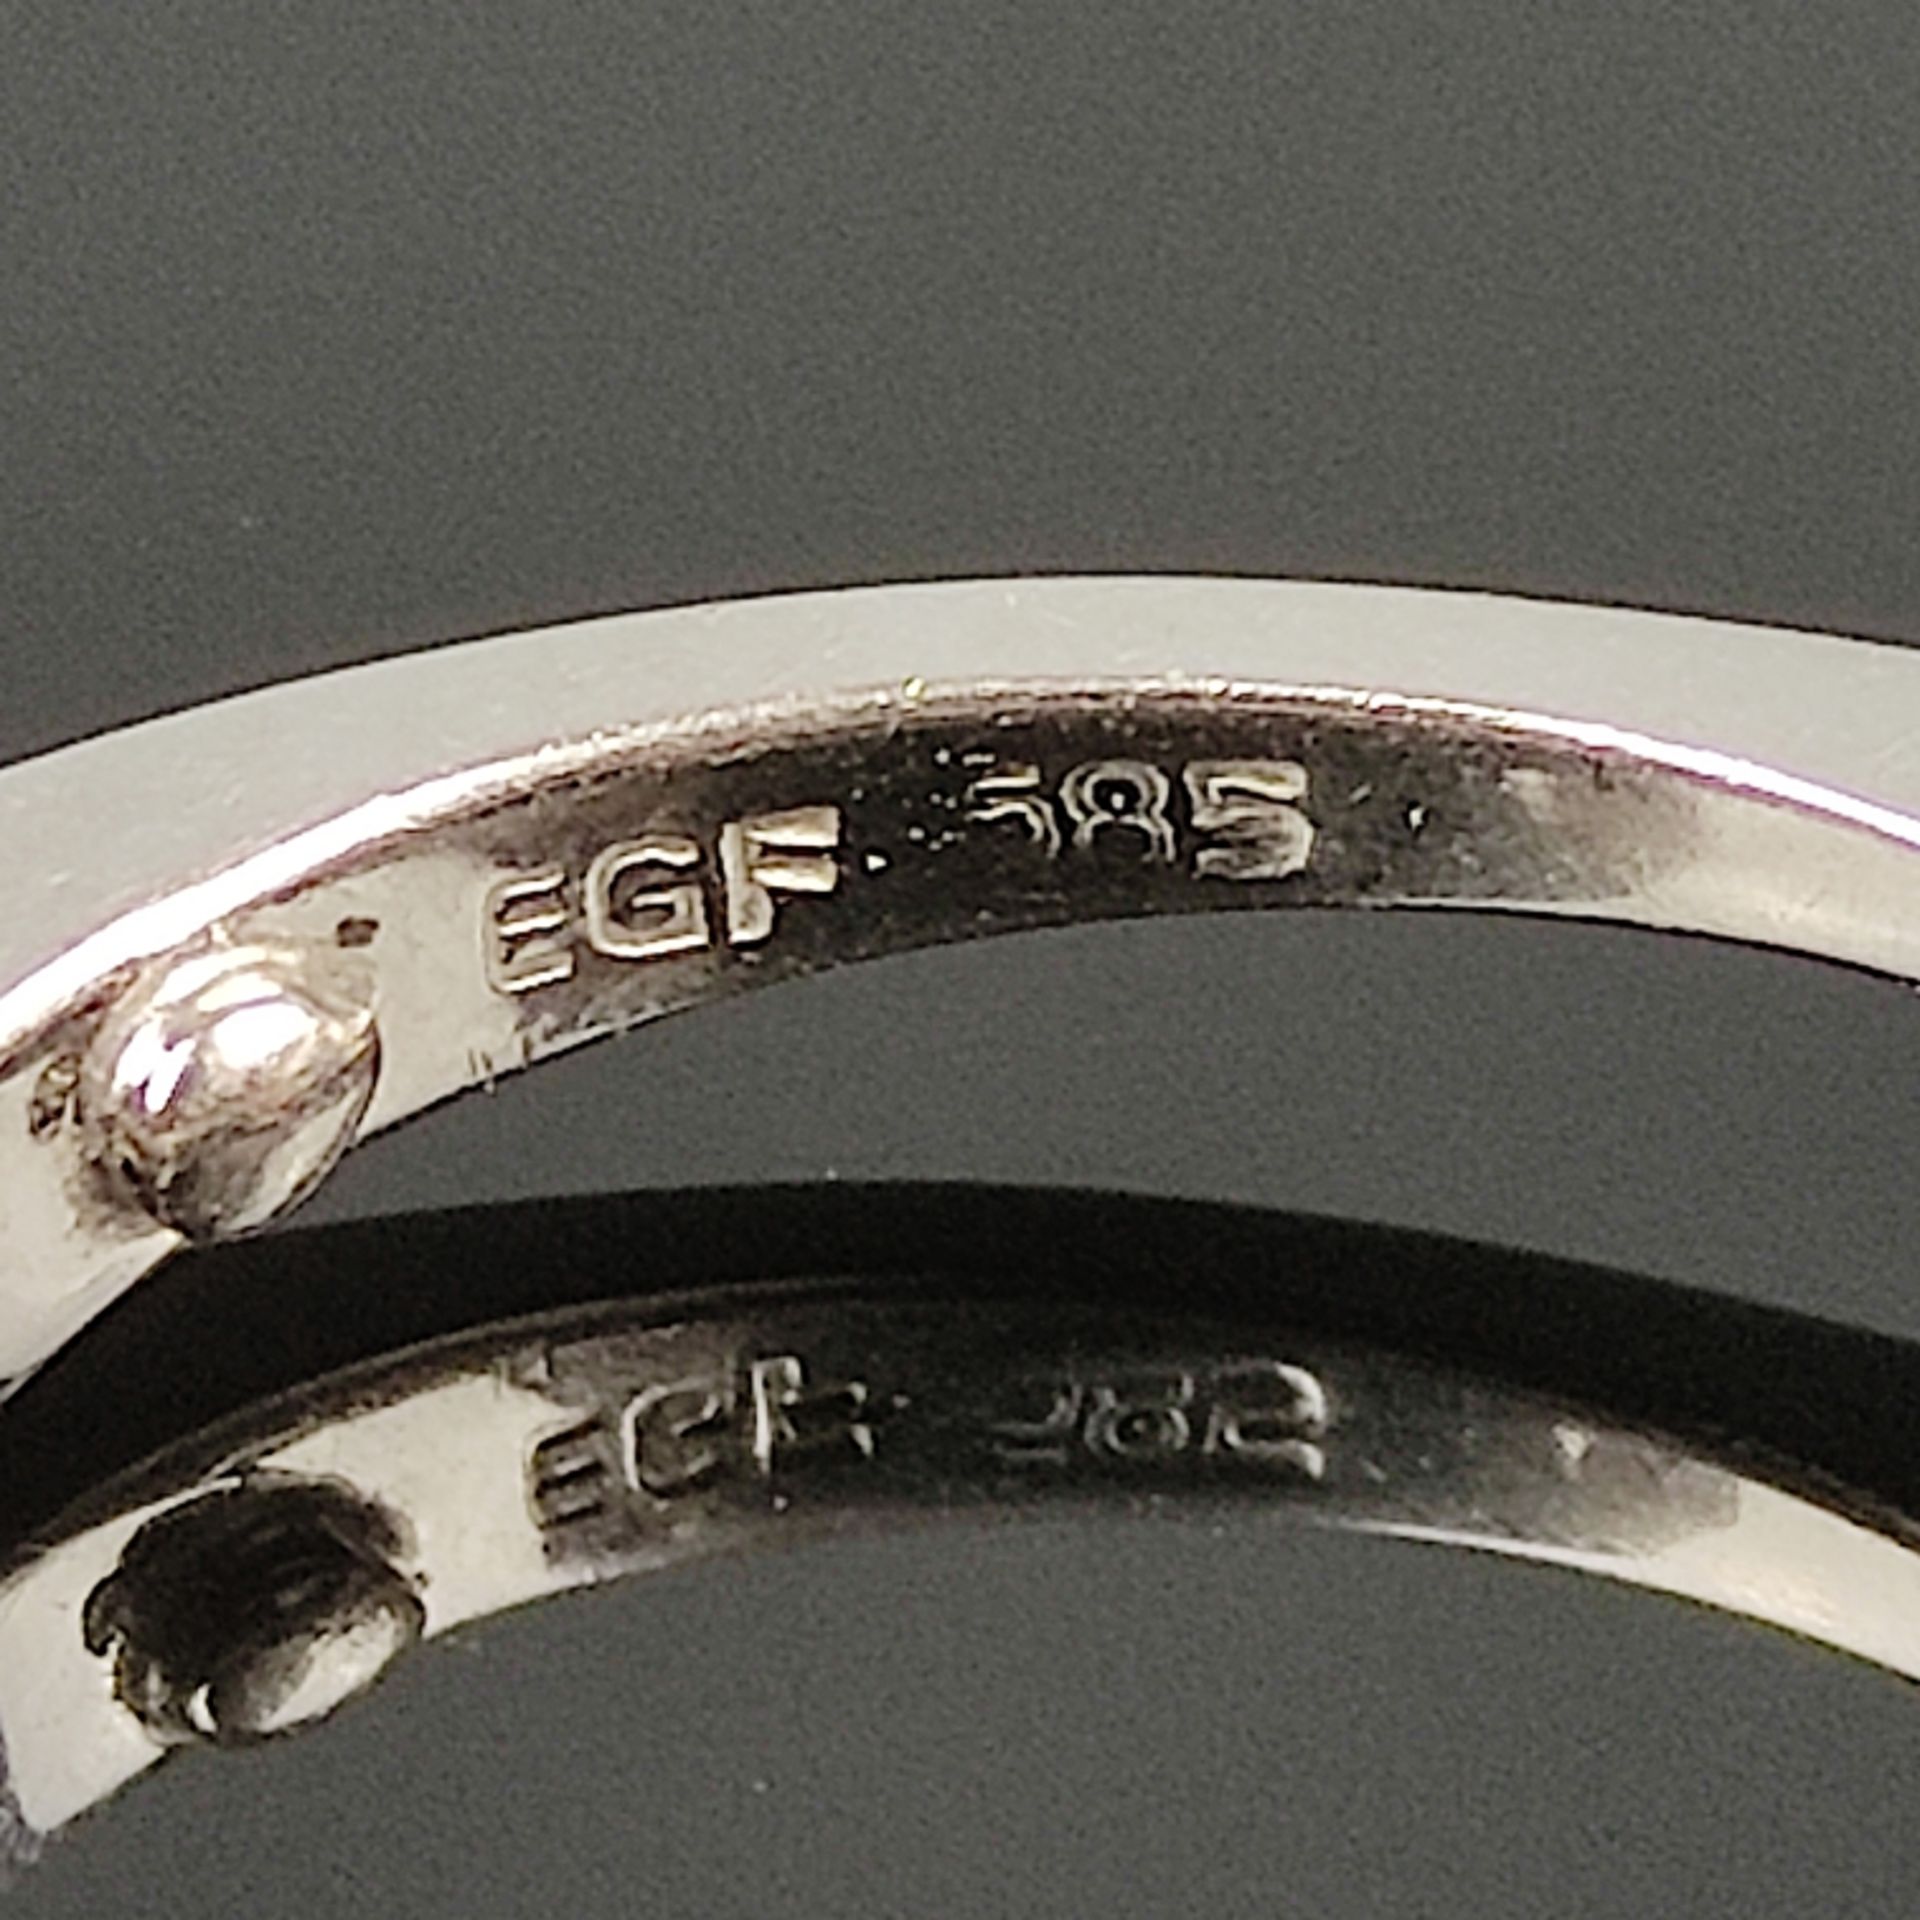 Diamant-Saphir-Ring, 585/14K Weißgold, 3,6g, besetzt mit 6 Diamanten und 4 Saphiren, am unteren End - Bild 3 aus 4